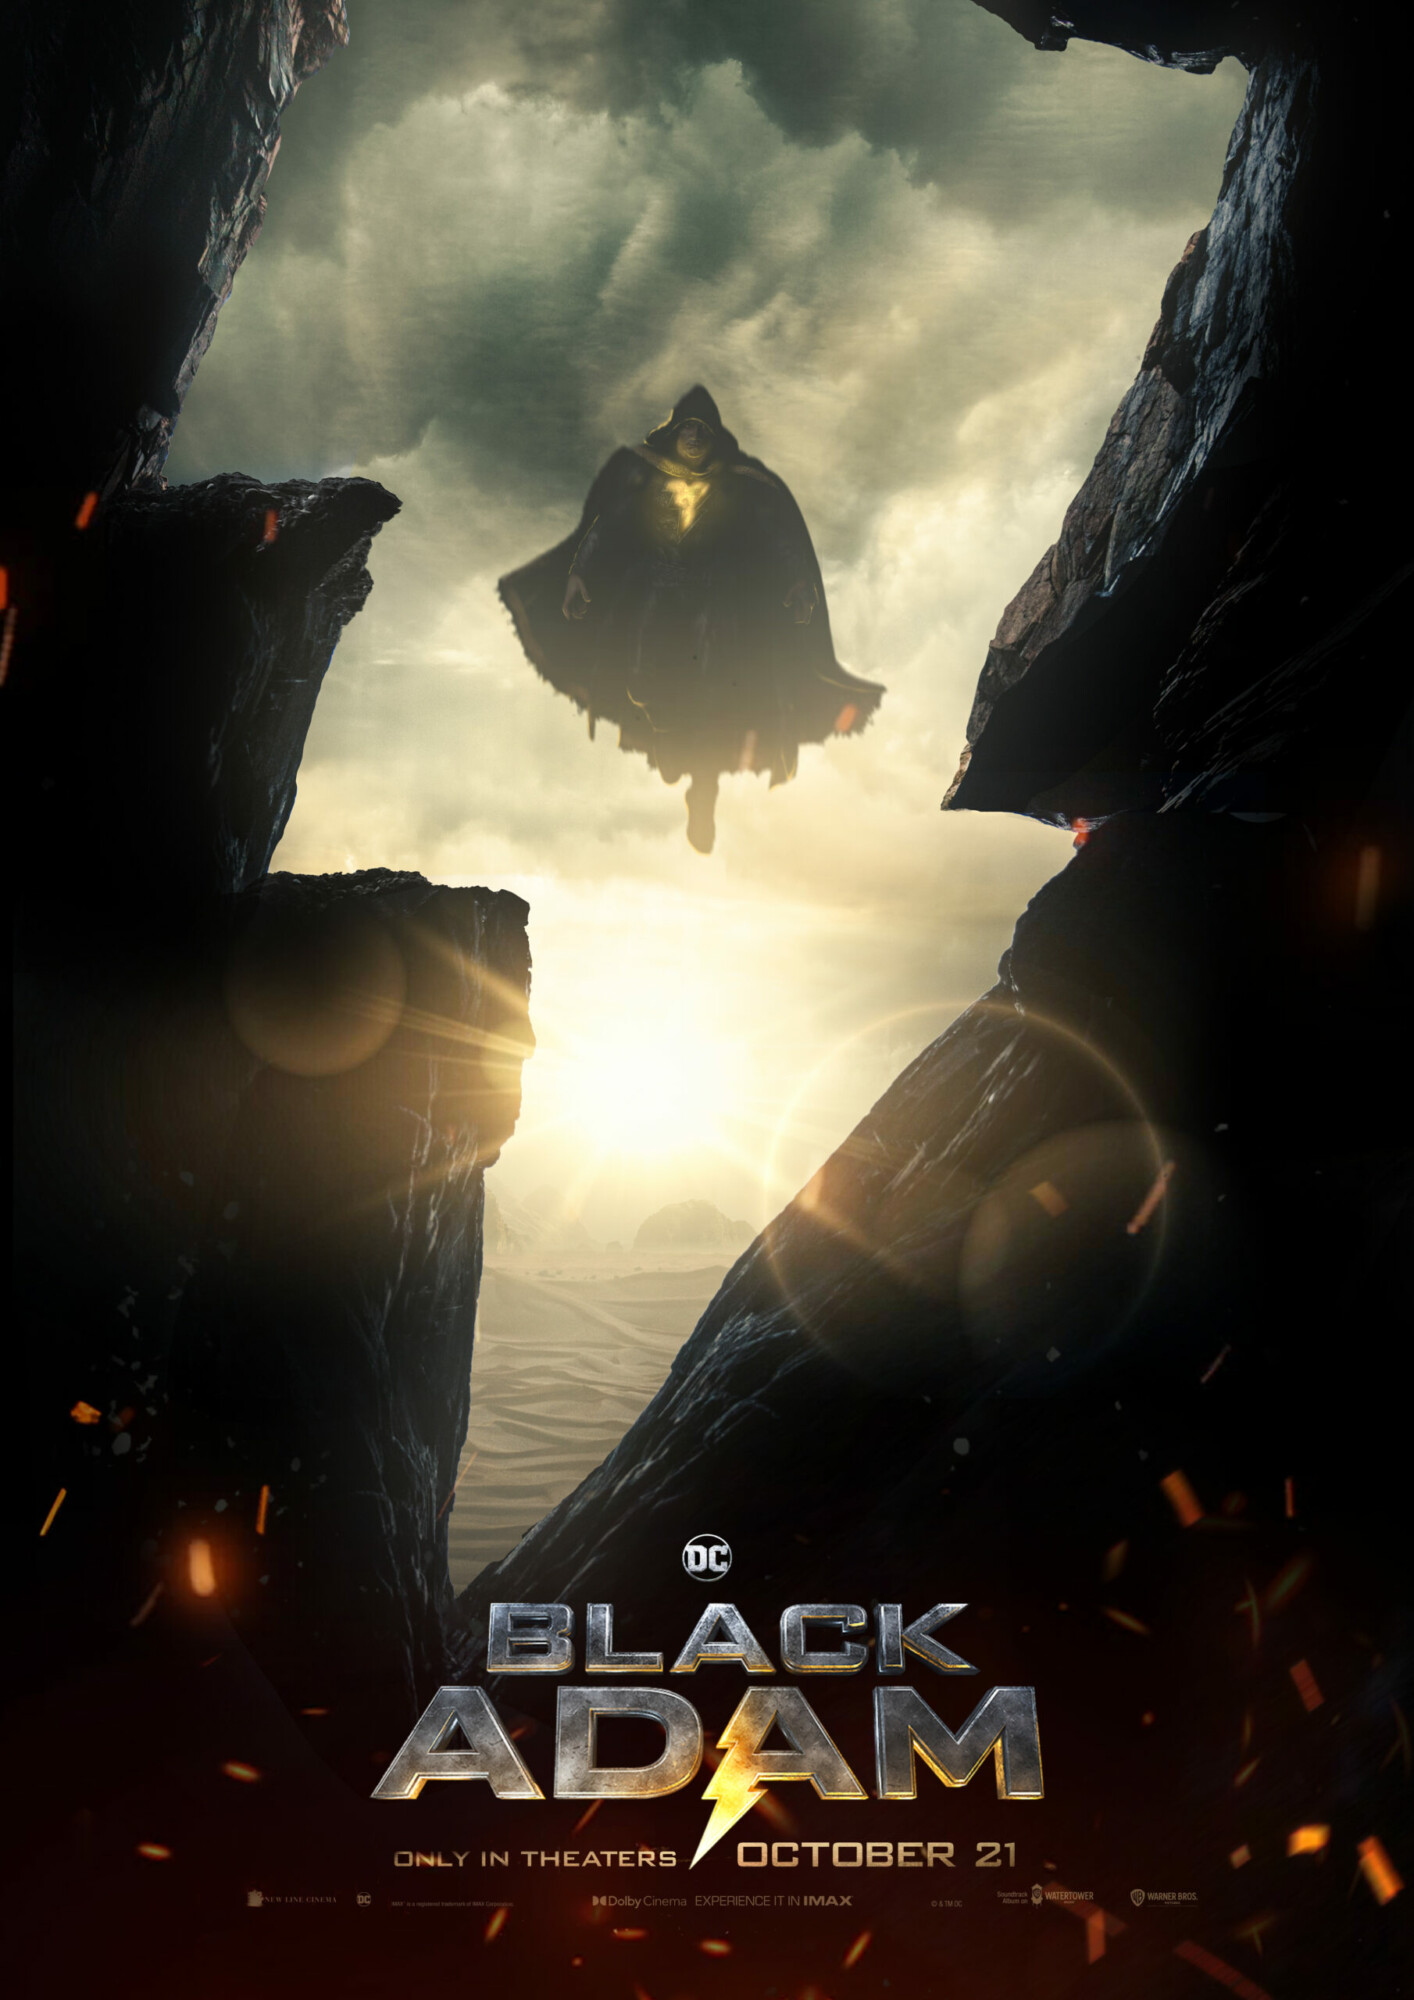 Black Adam Movie Poster Design